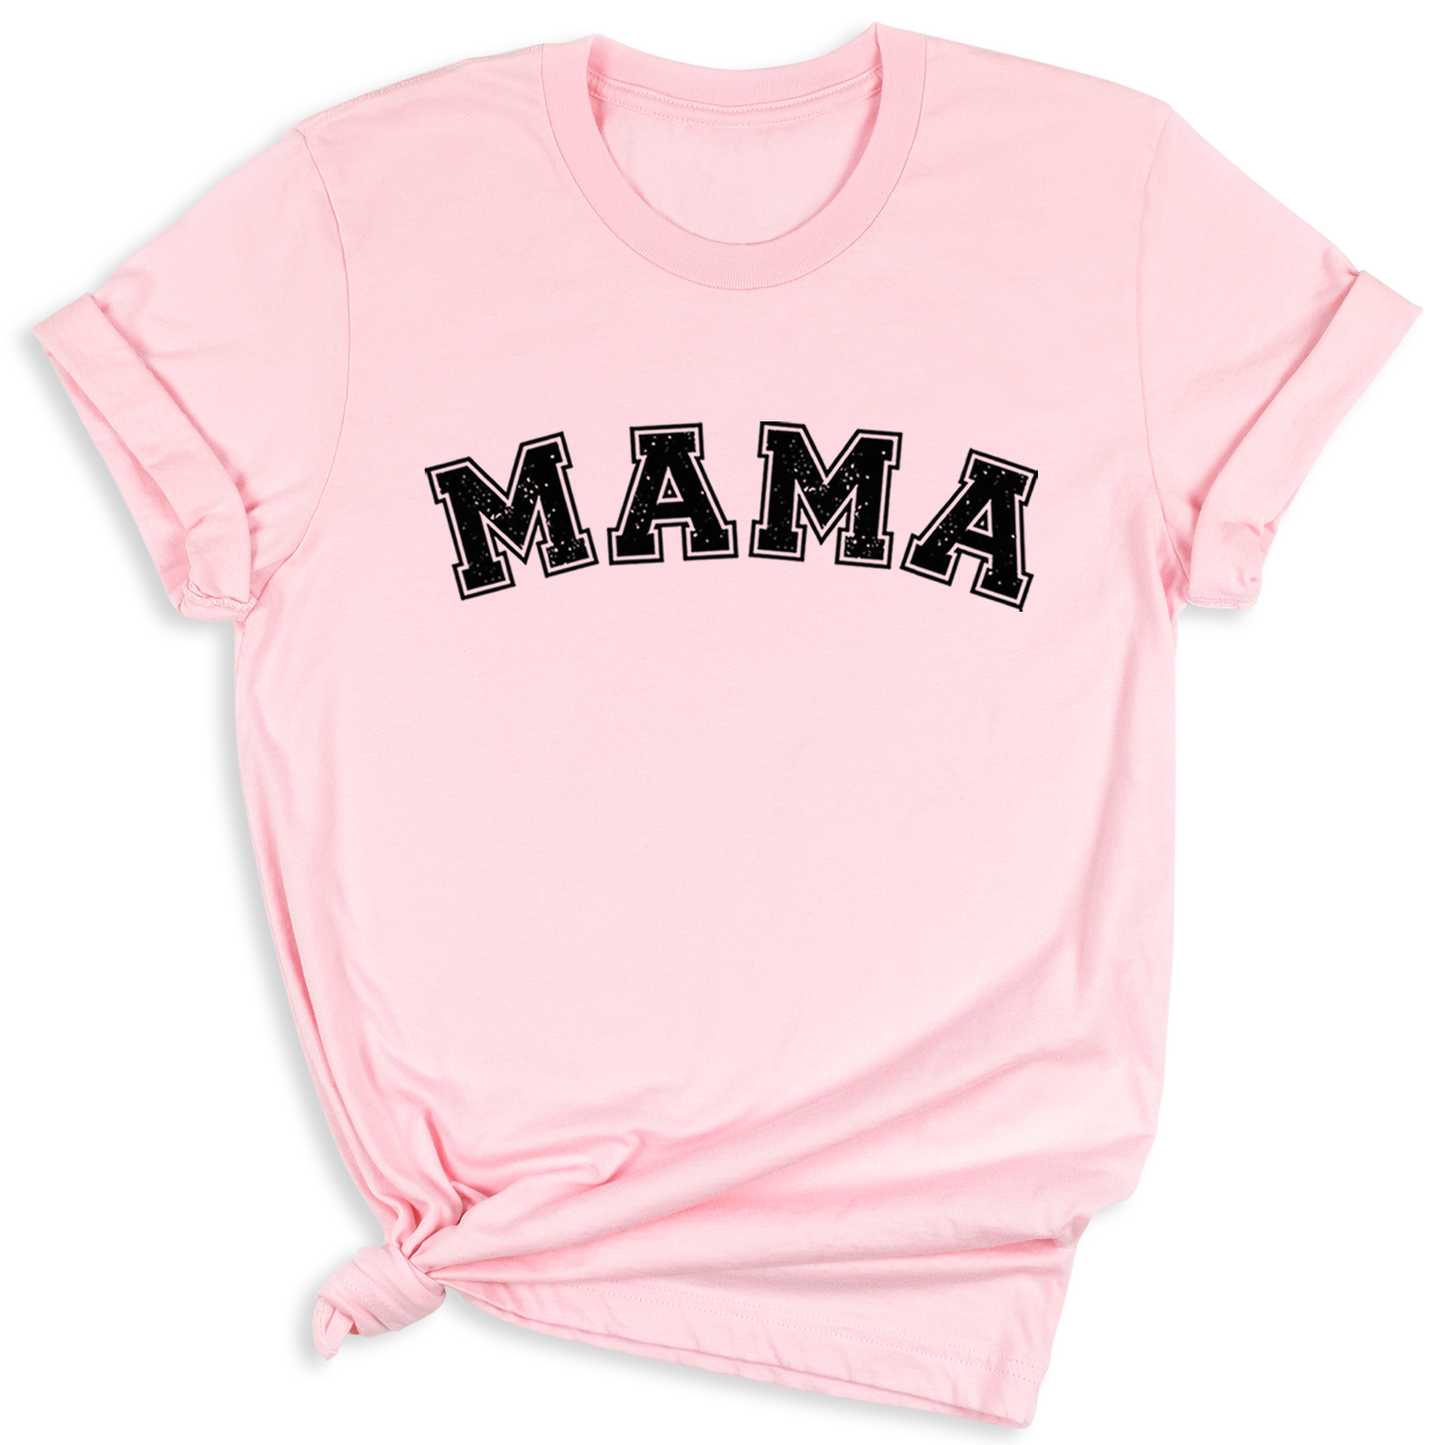 Dada Mama T-Shirt